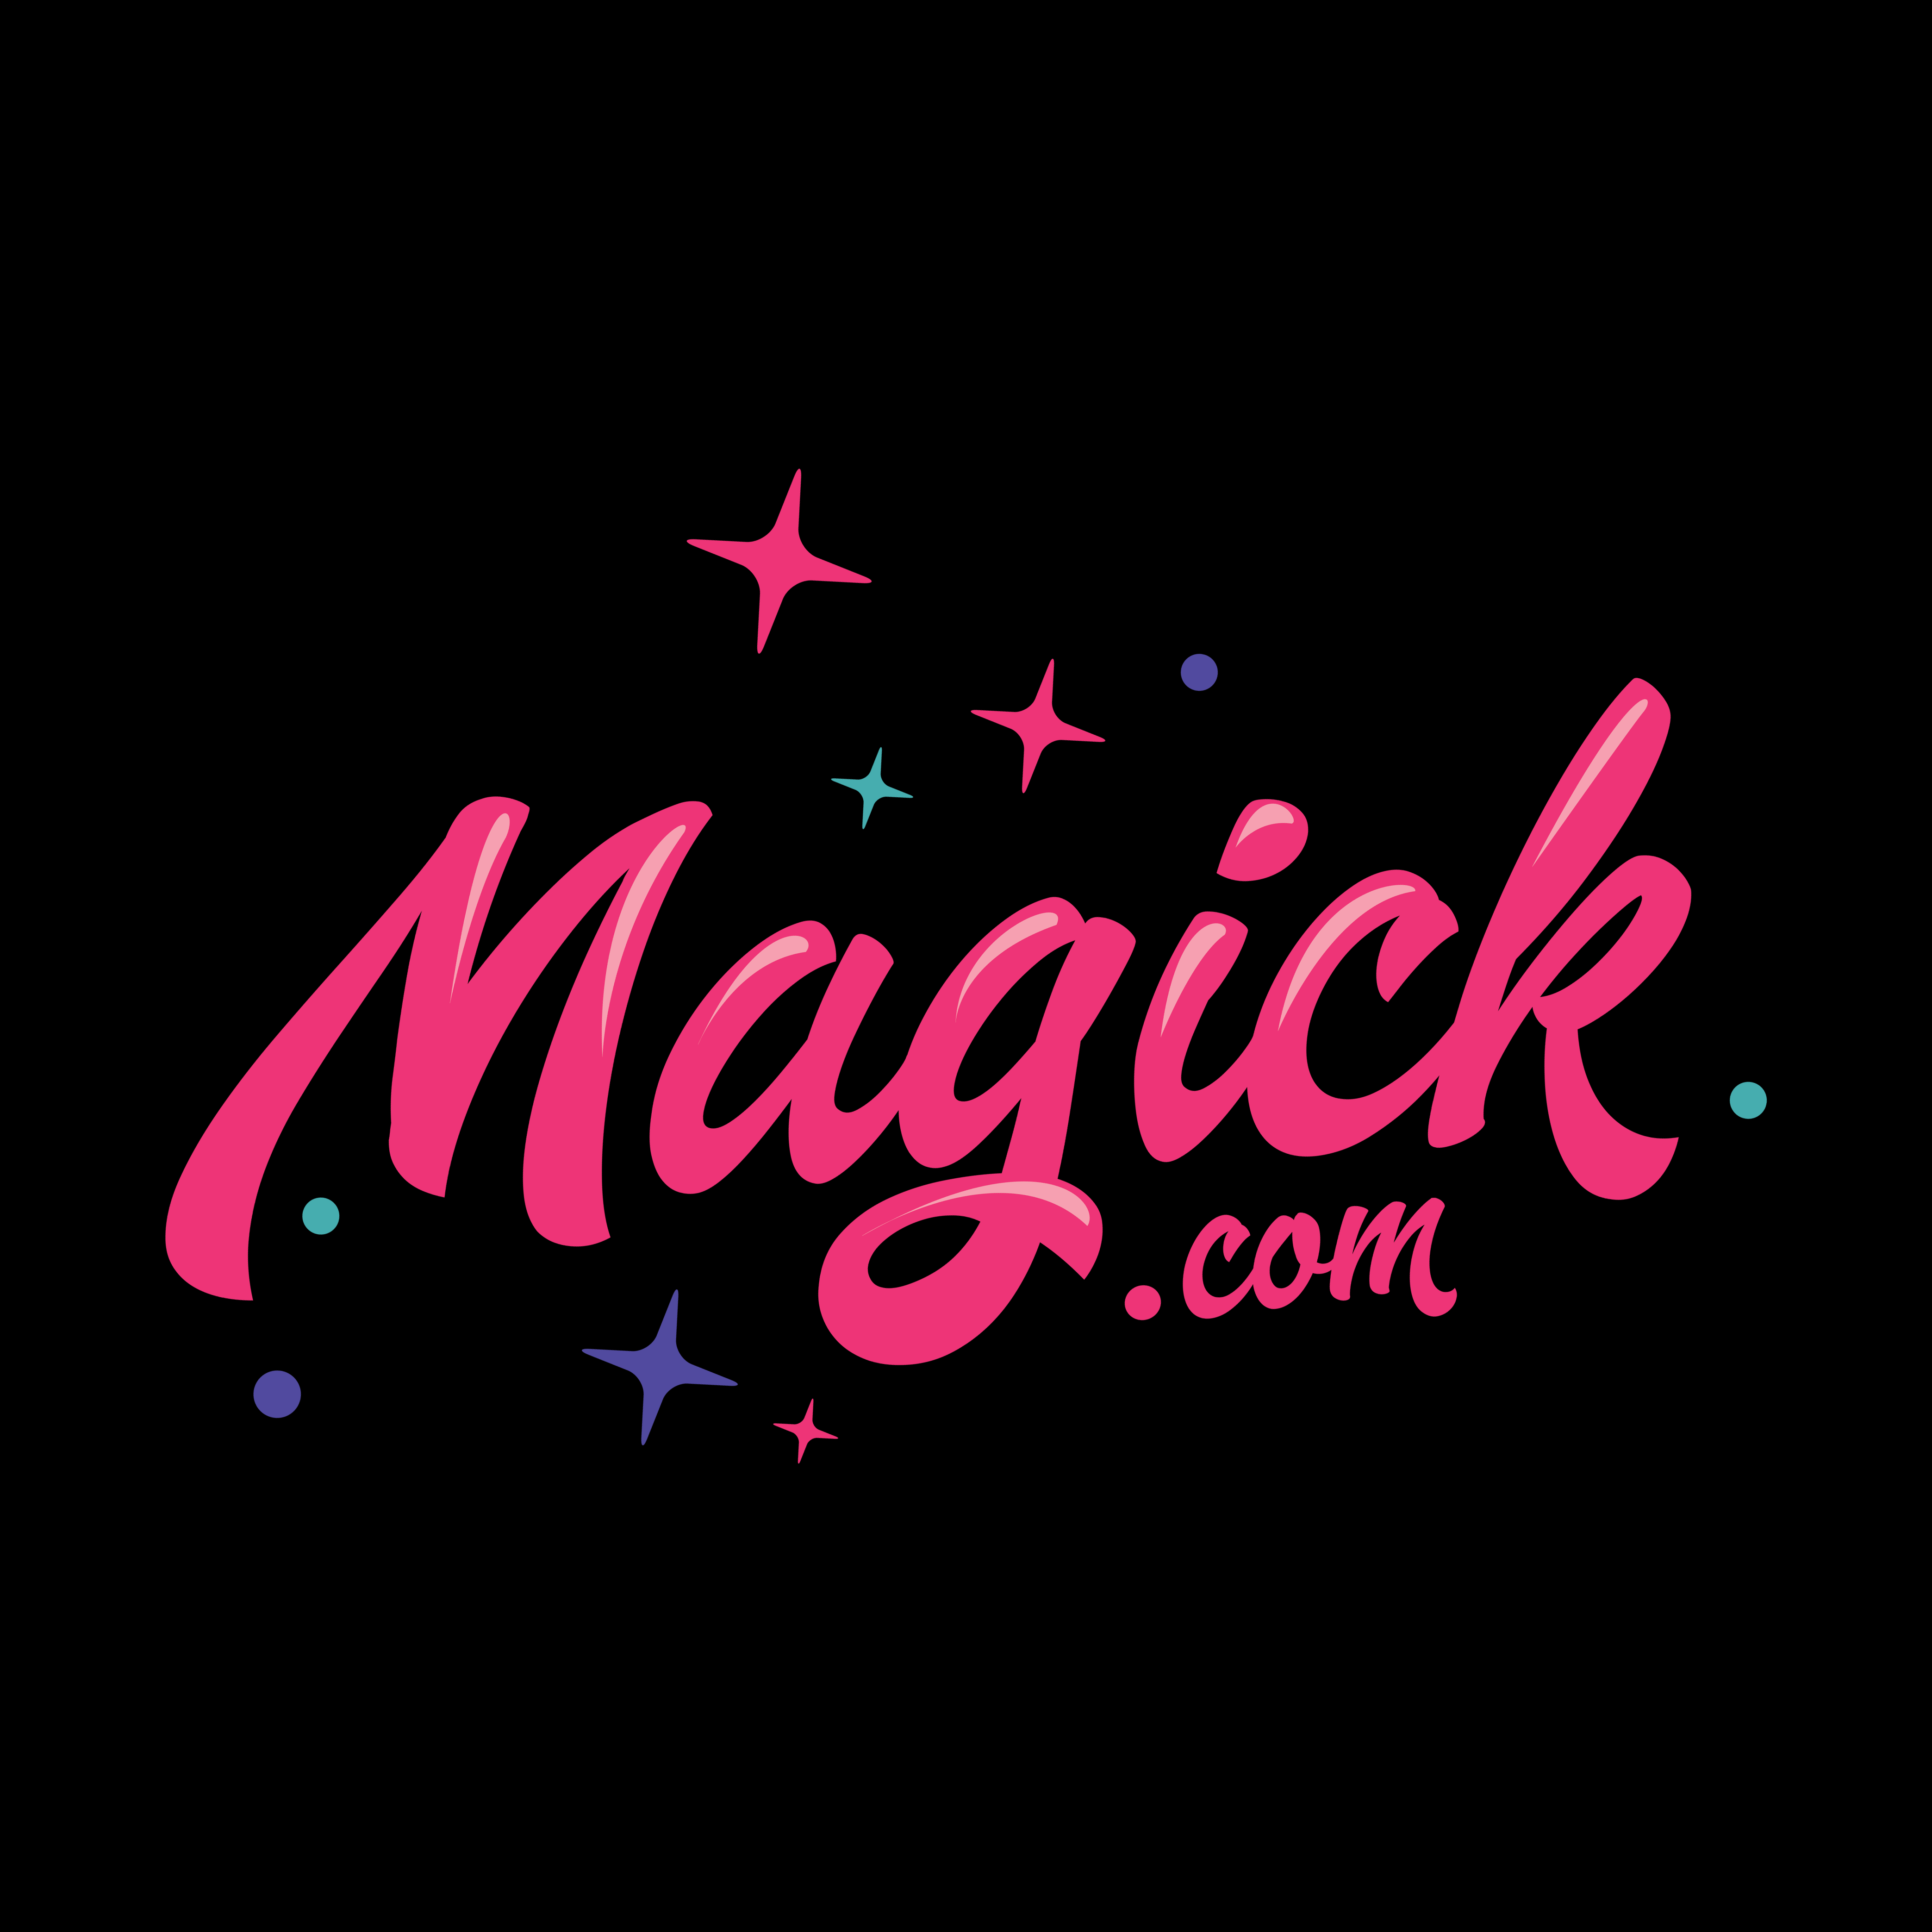 magick.com